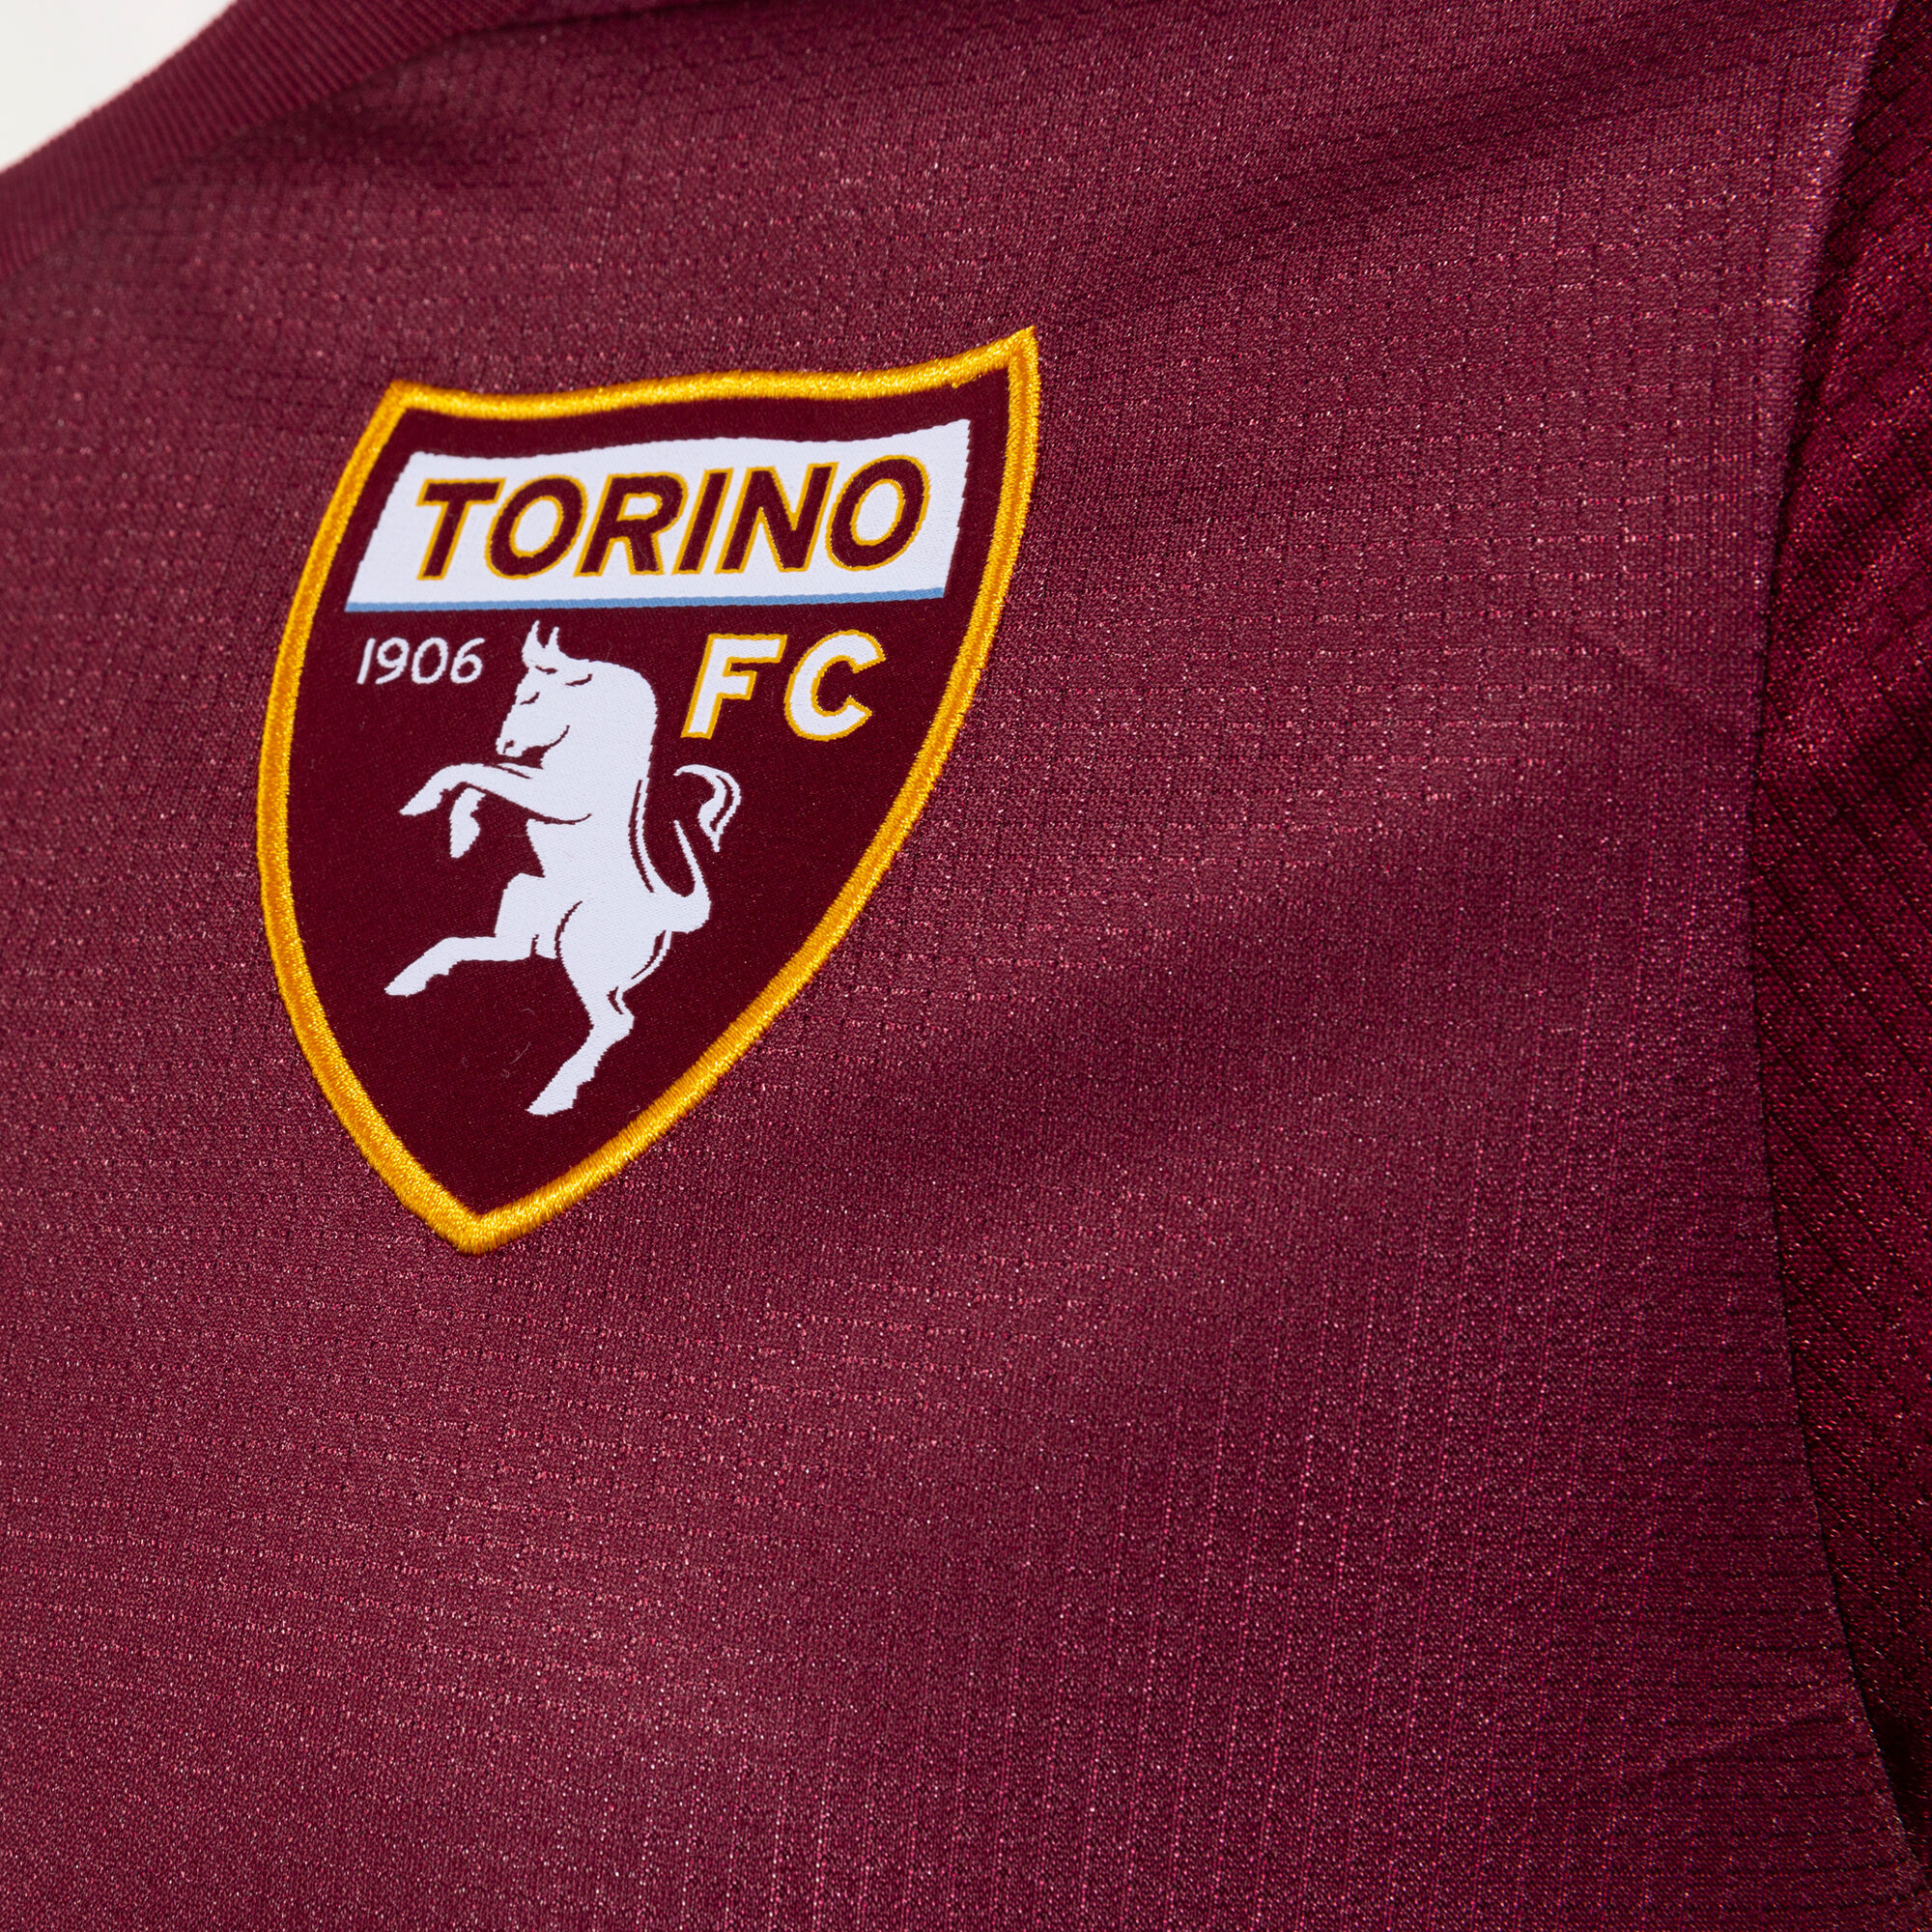 Camisa Joma Torino Especial - 23/24